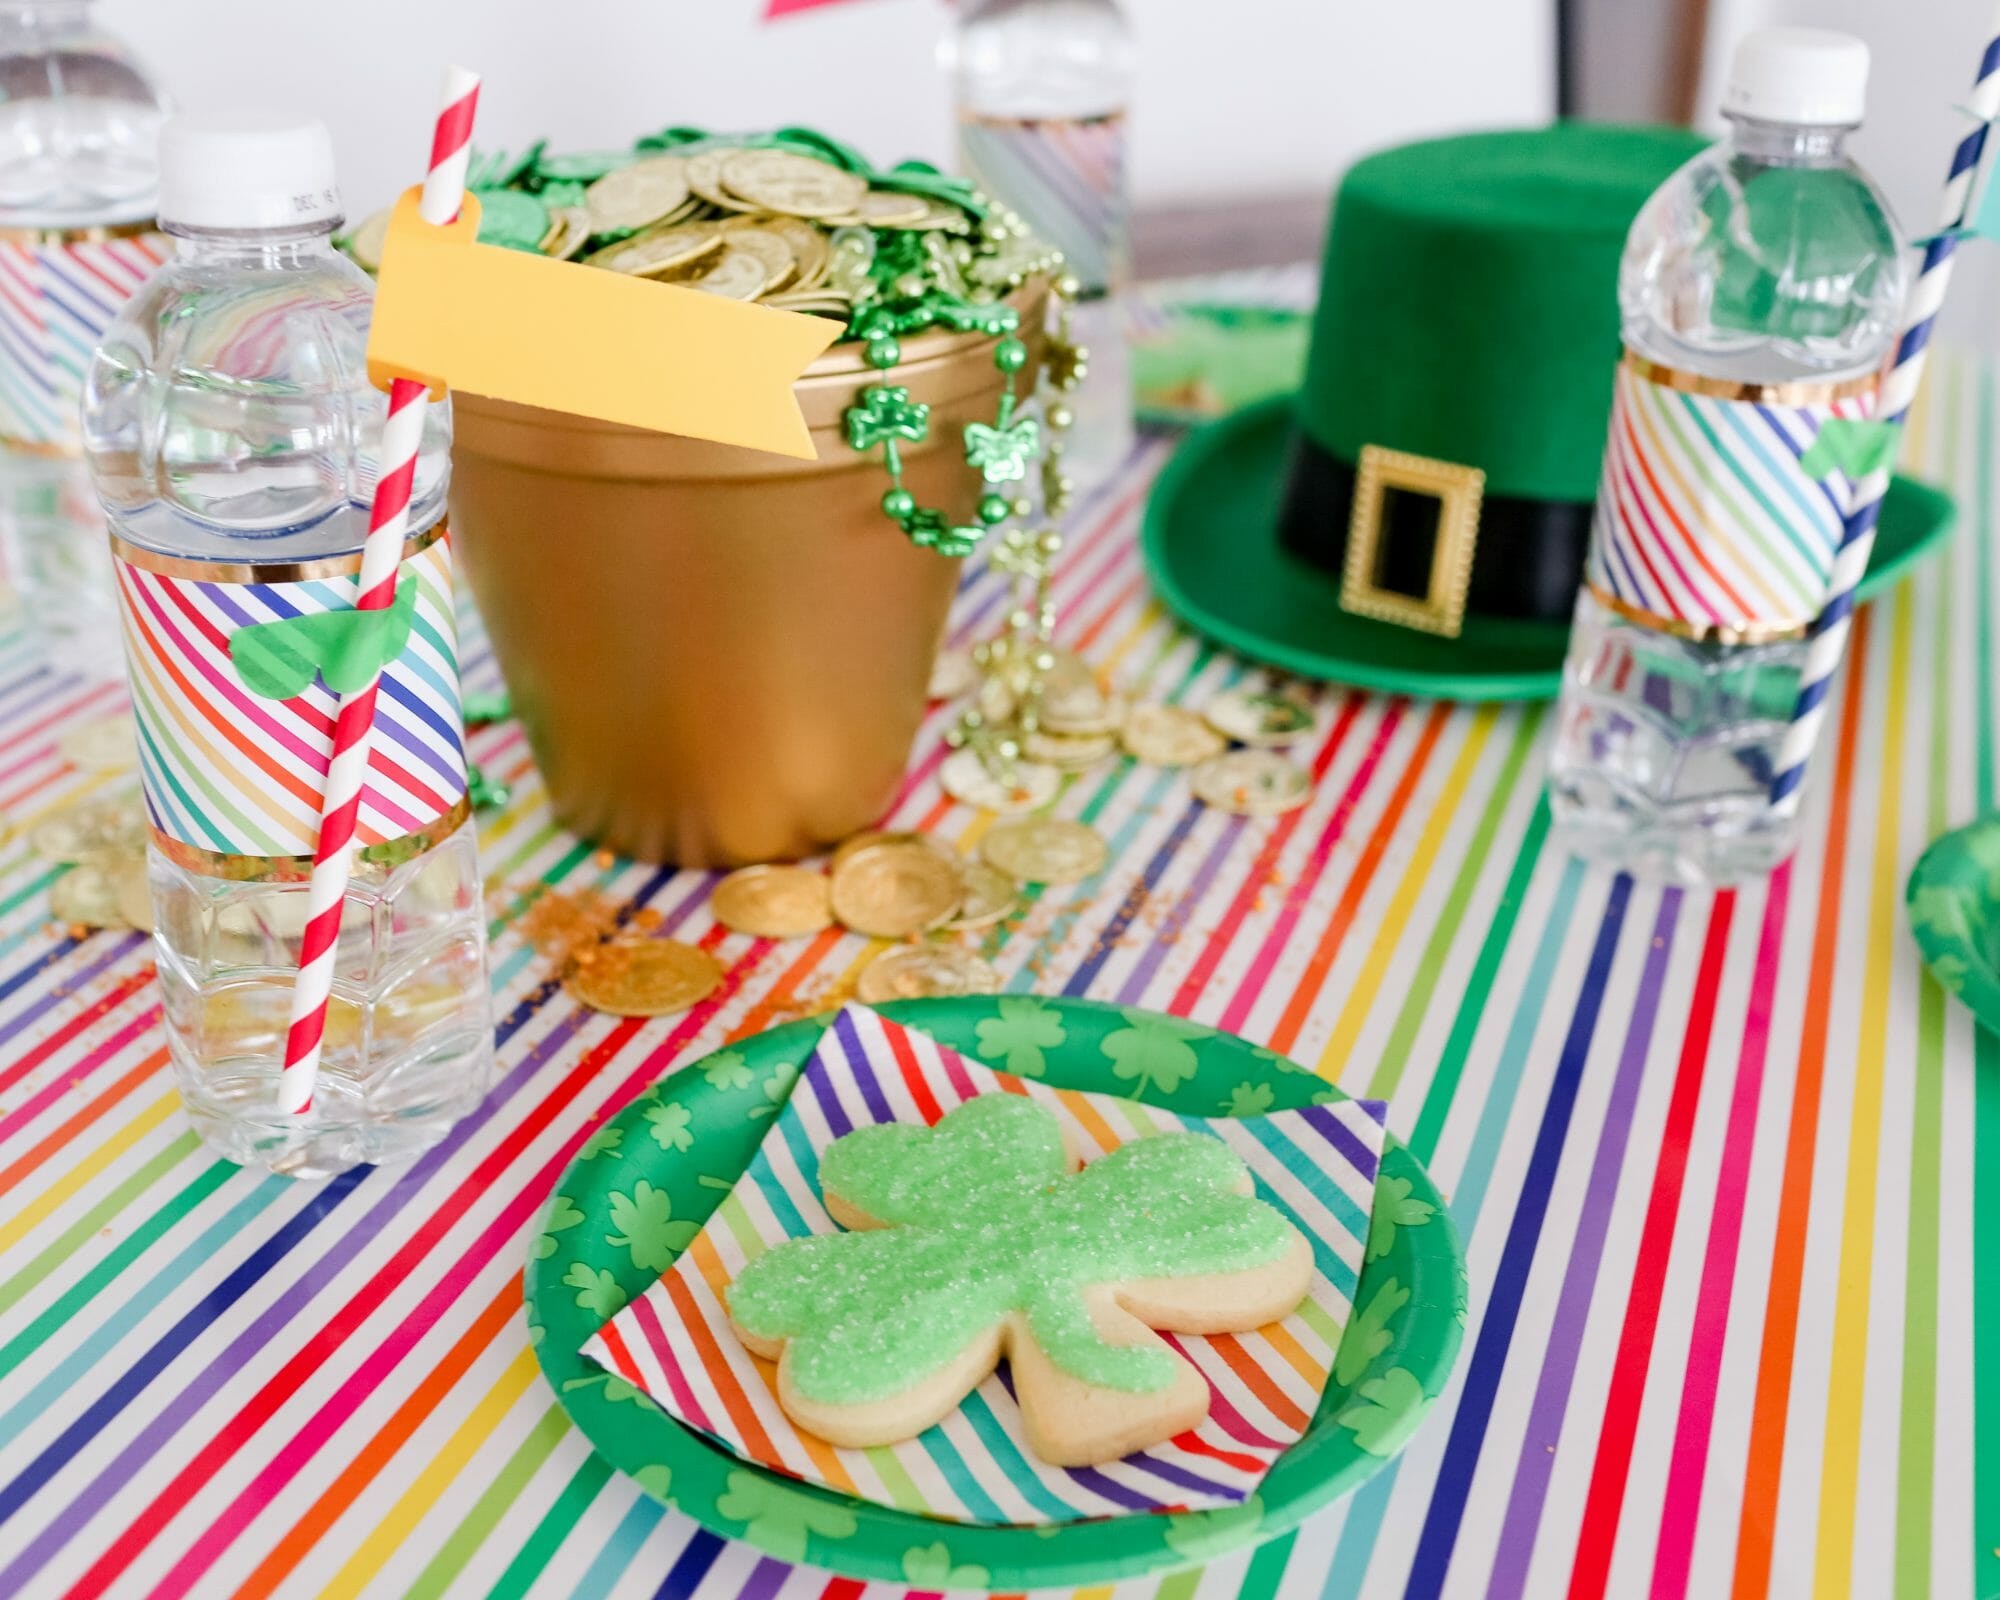 Easy St Patrick’s Day Ideas for Kids | st. Patrick's day crafts | st. Patrick's day fun | fun ideas for st. Patrick's day || JennyCookies.com #stpatricksdayfun #kidscrafts #stpaddysday